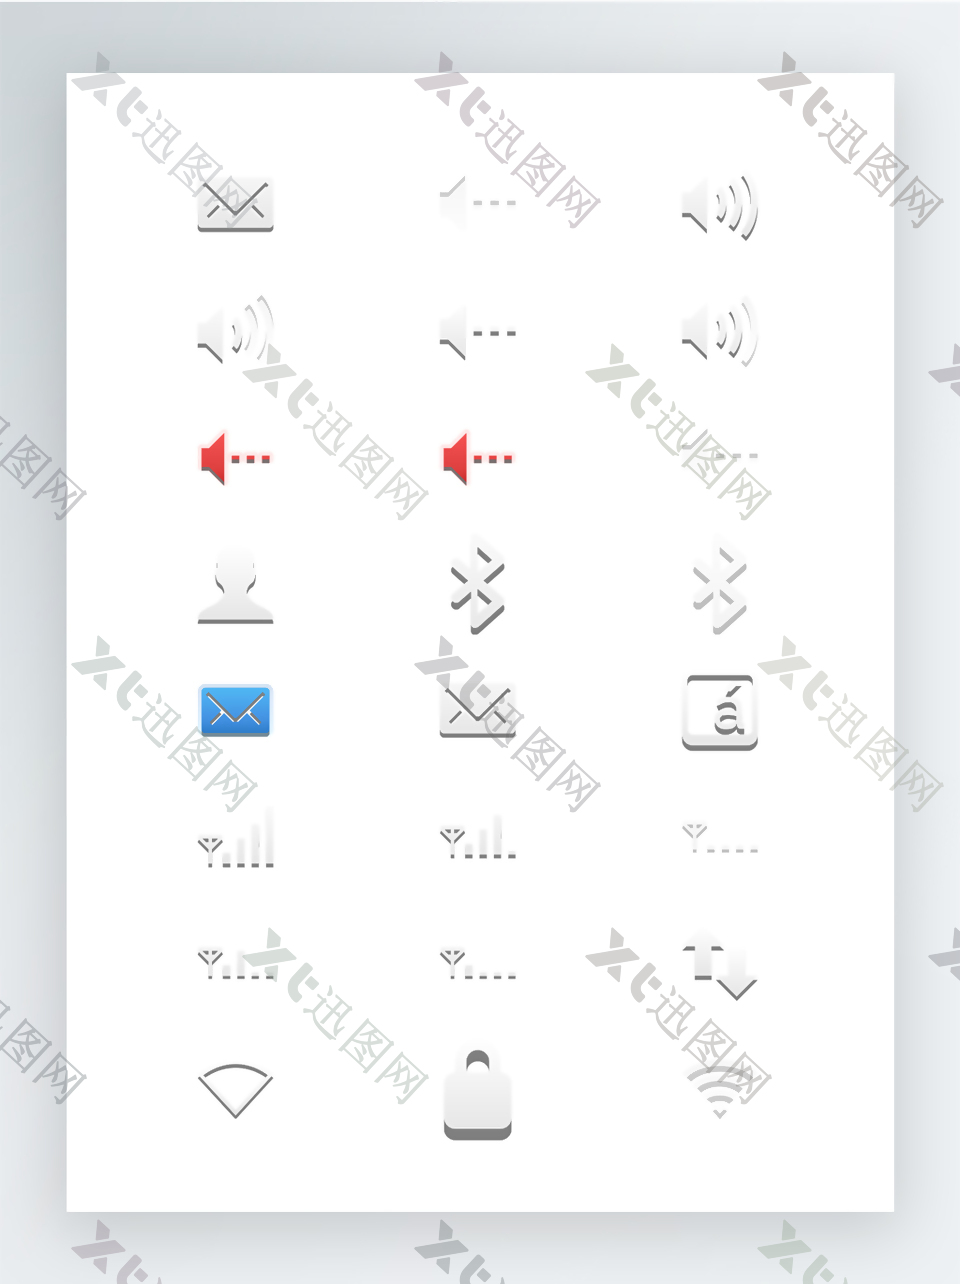 彩色SVG矢量格式图标集-面板常用小图标